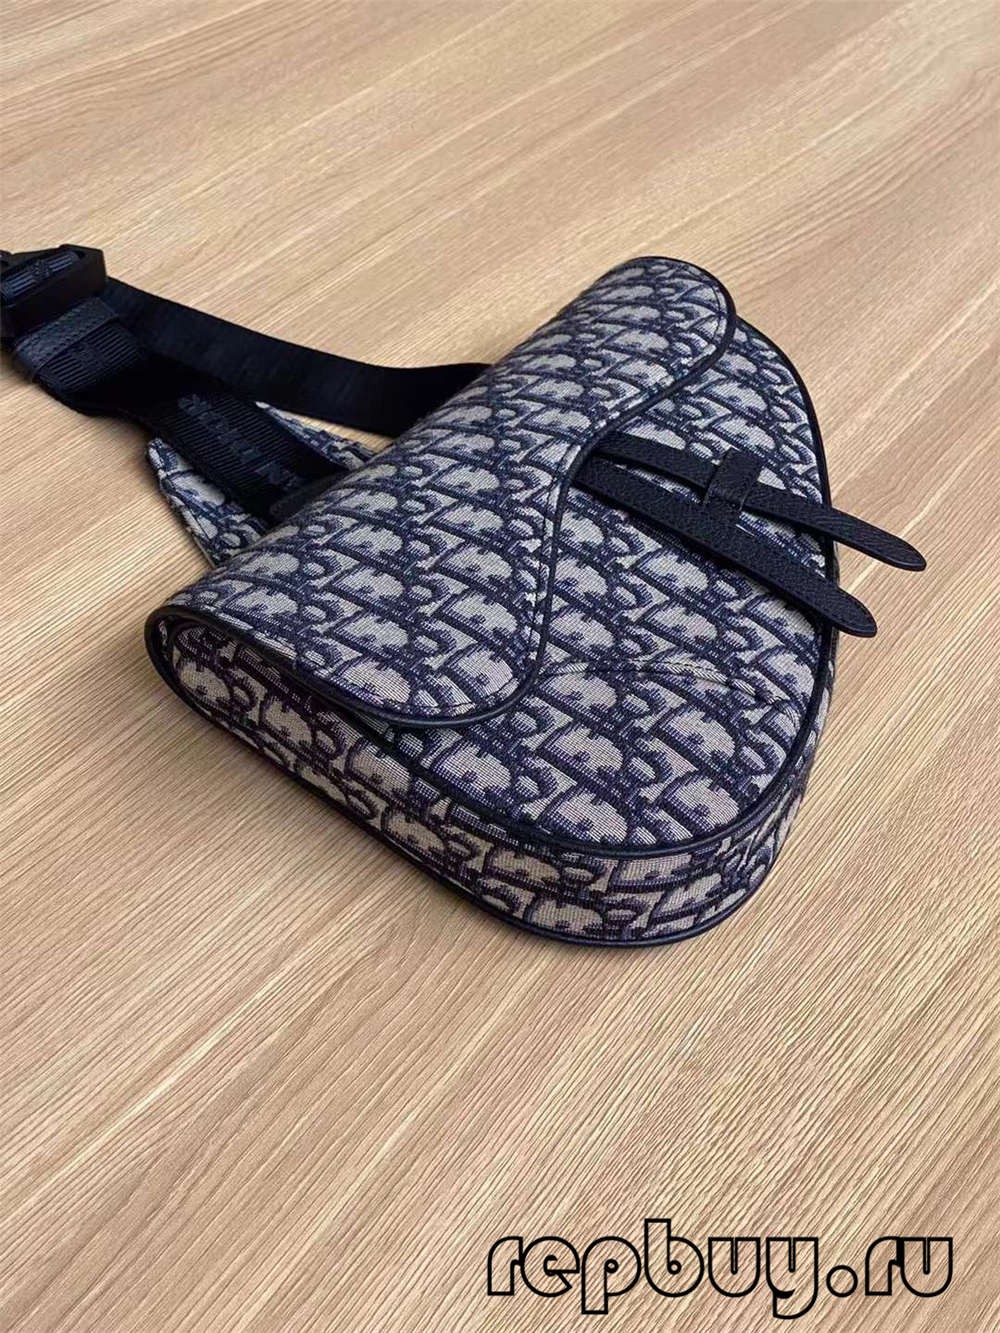 Dior top replica saddle bag black embroidery Oblique print 26cm (2022 Special)-Best Quality Fake Louis Vuitton Bag Online Store, Replica designer bag ru